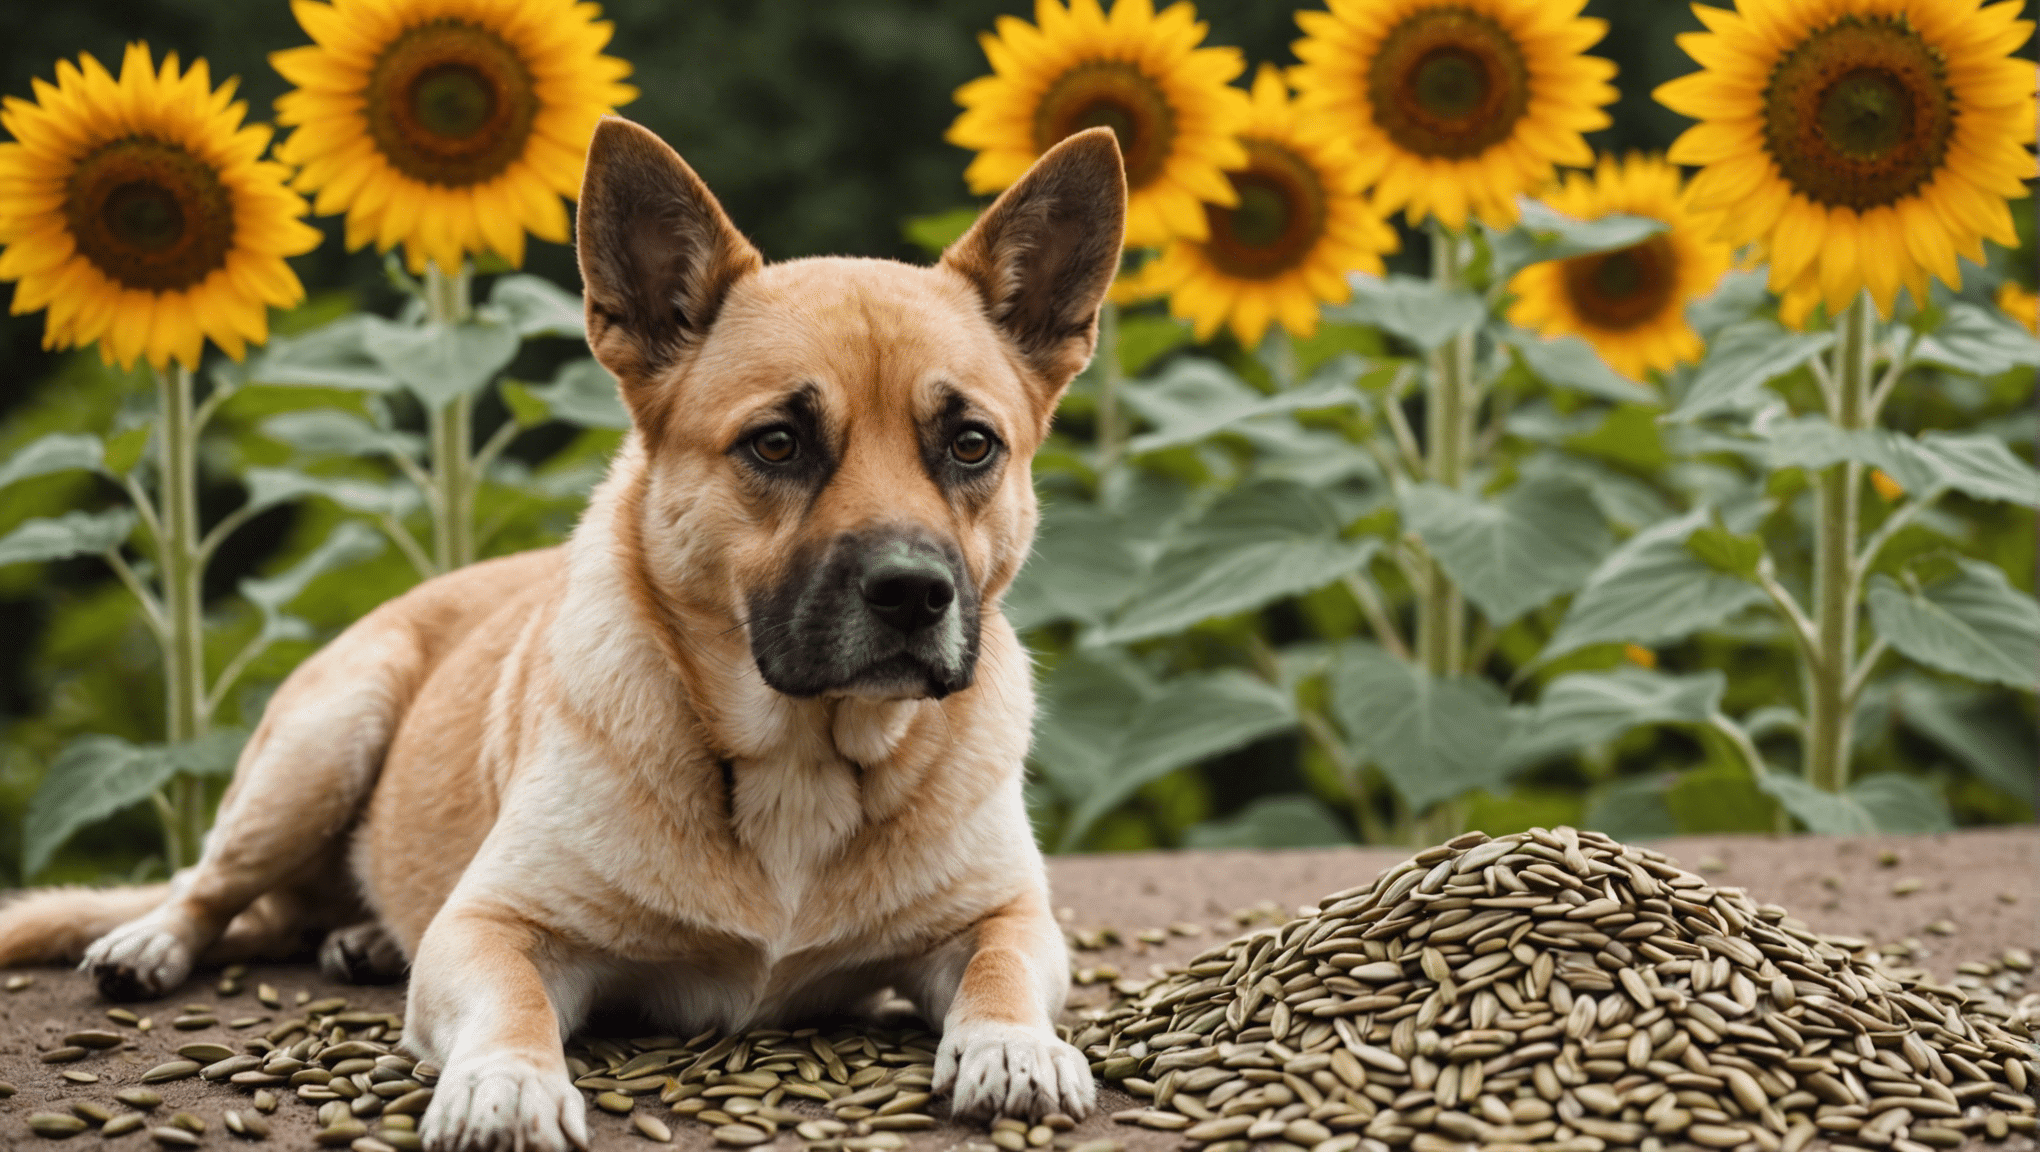 découvrez si les graines de tournesol peuvent être consommées sans danger pour les chiens et découvrez les risques et les avantages potentiels pour votre compagnon canin.